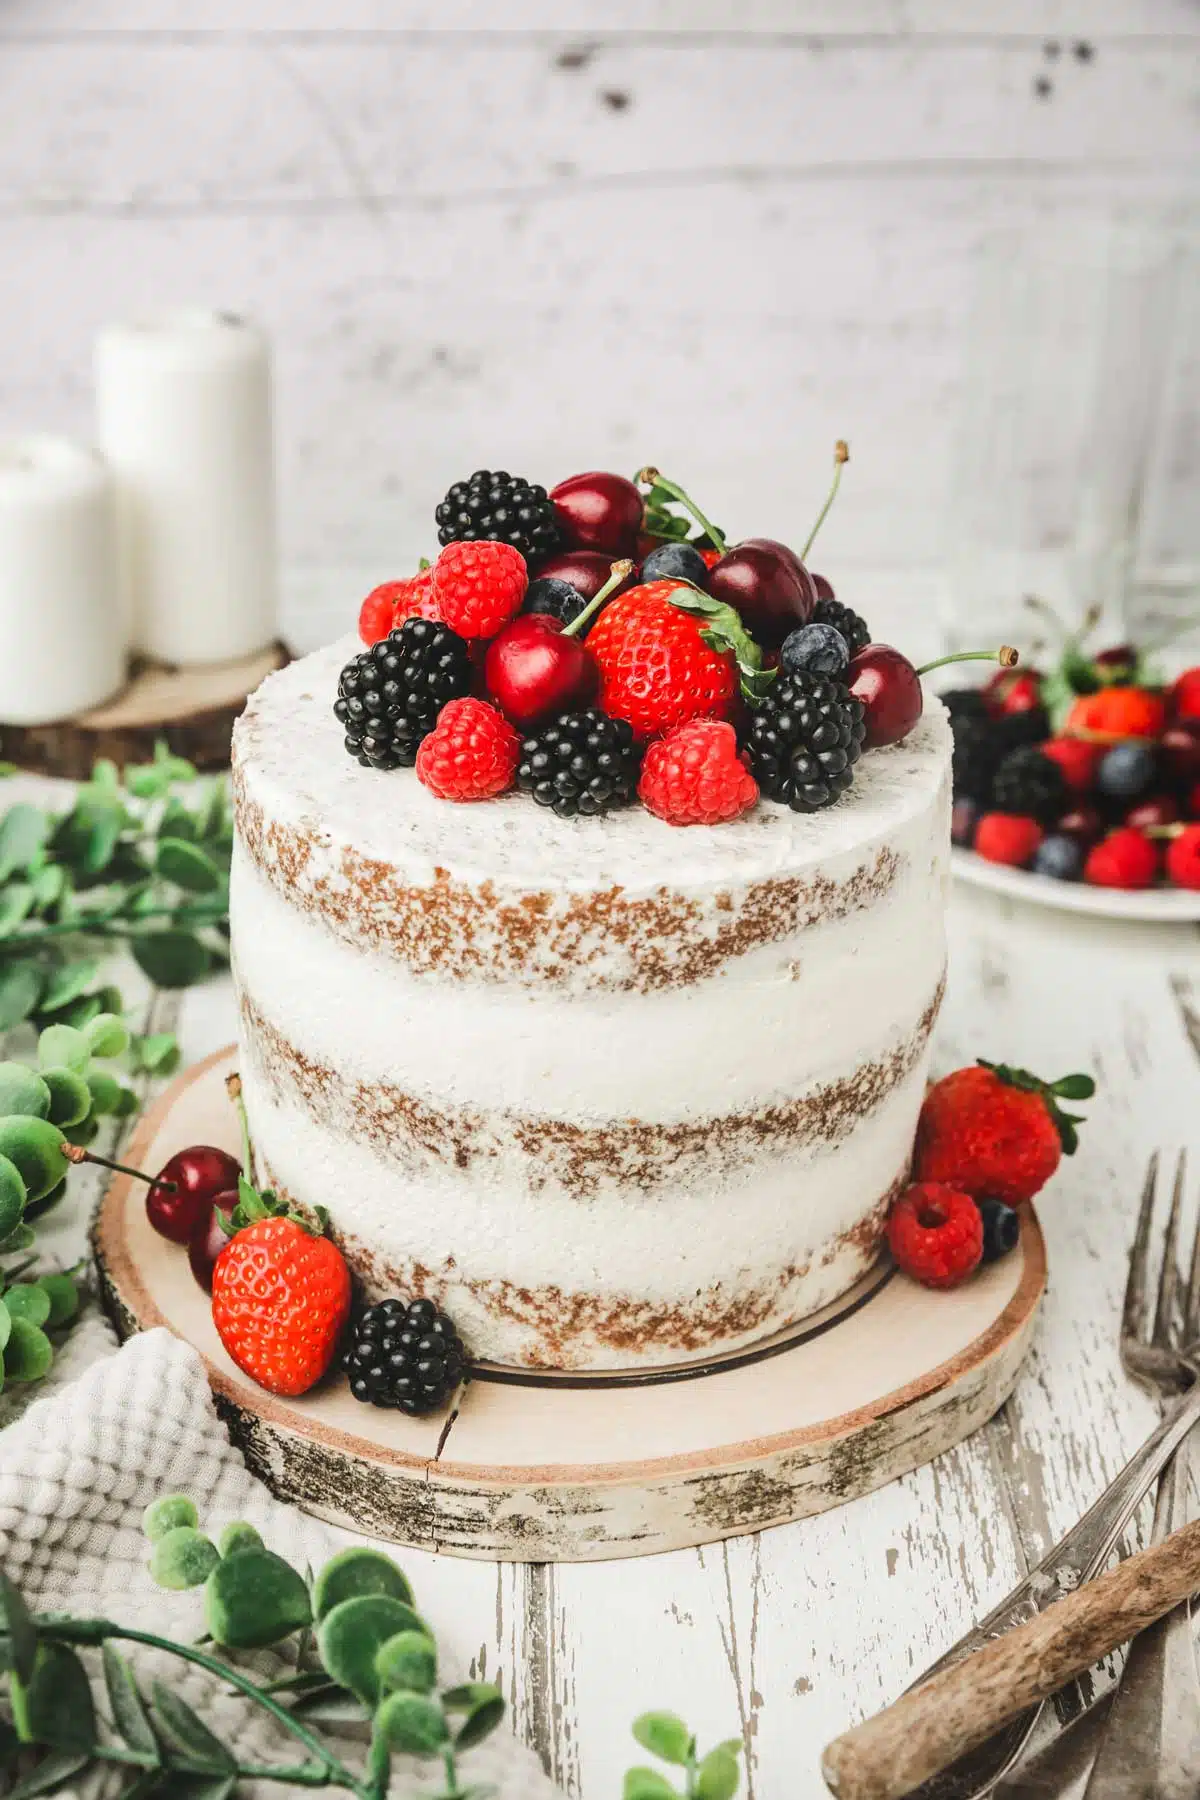 10 ustensiles indispensables pour réussir vos layer cakes [Cake Design] :  Il était une fois la pâtisserie